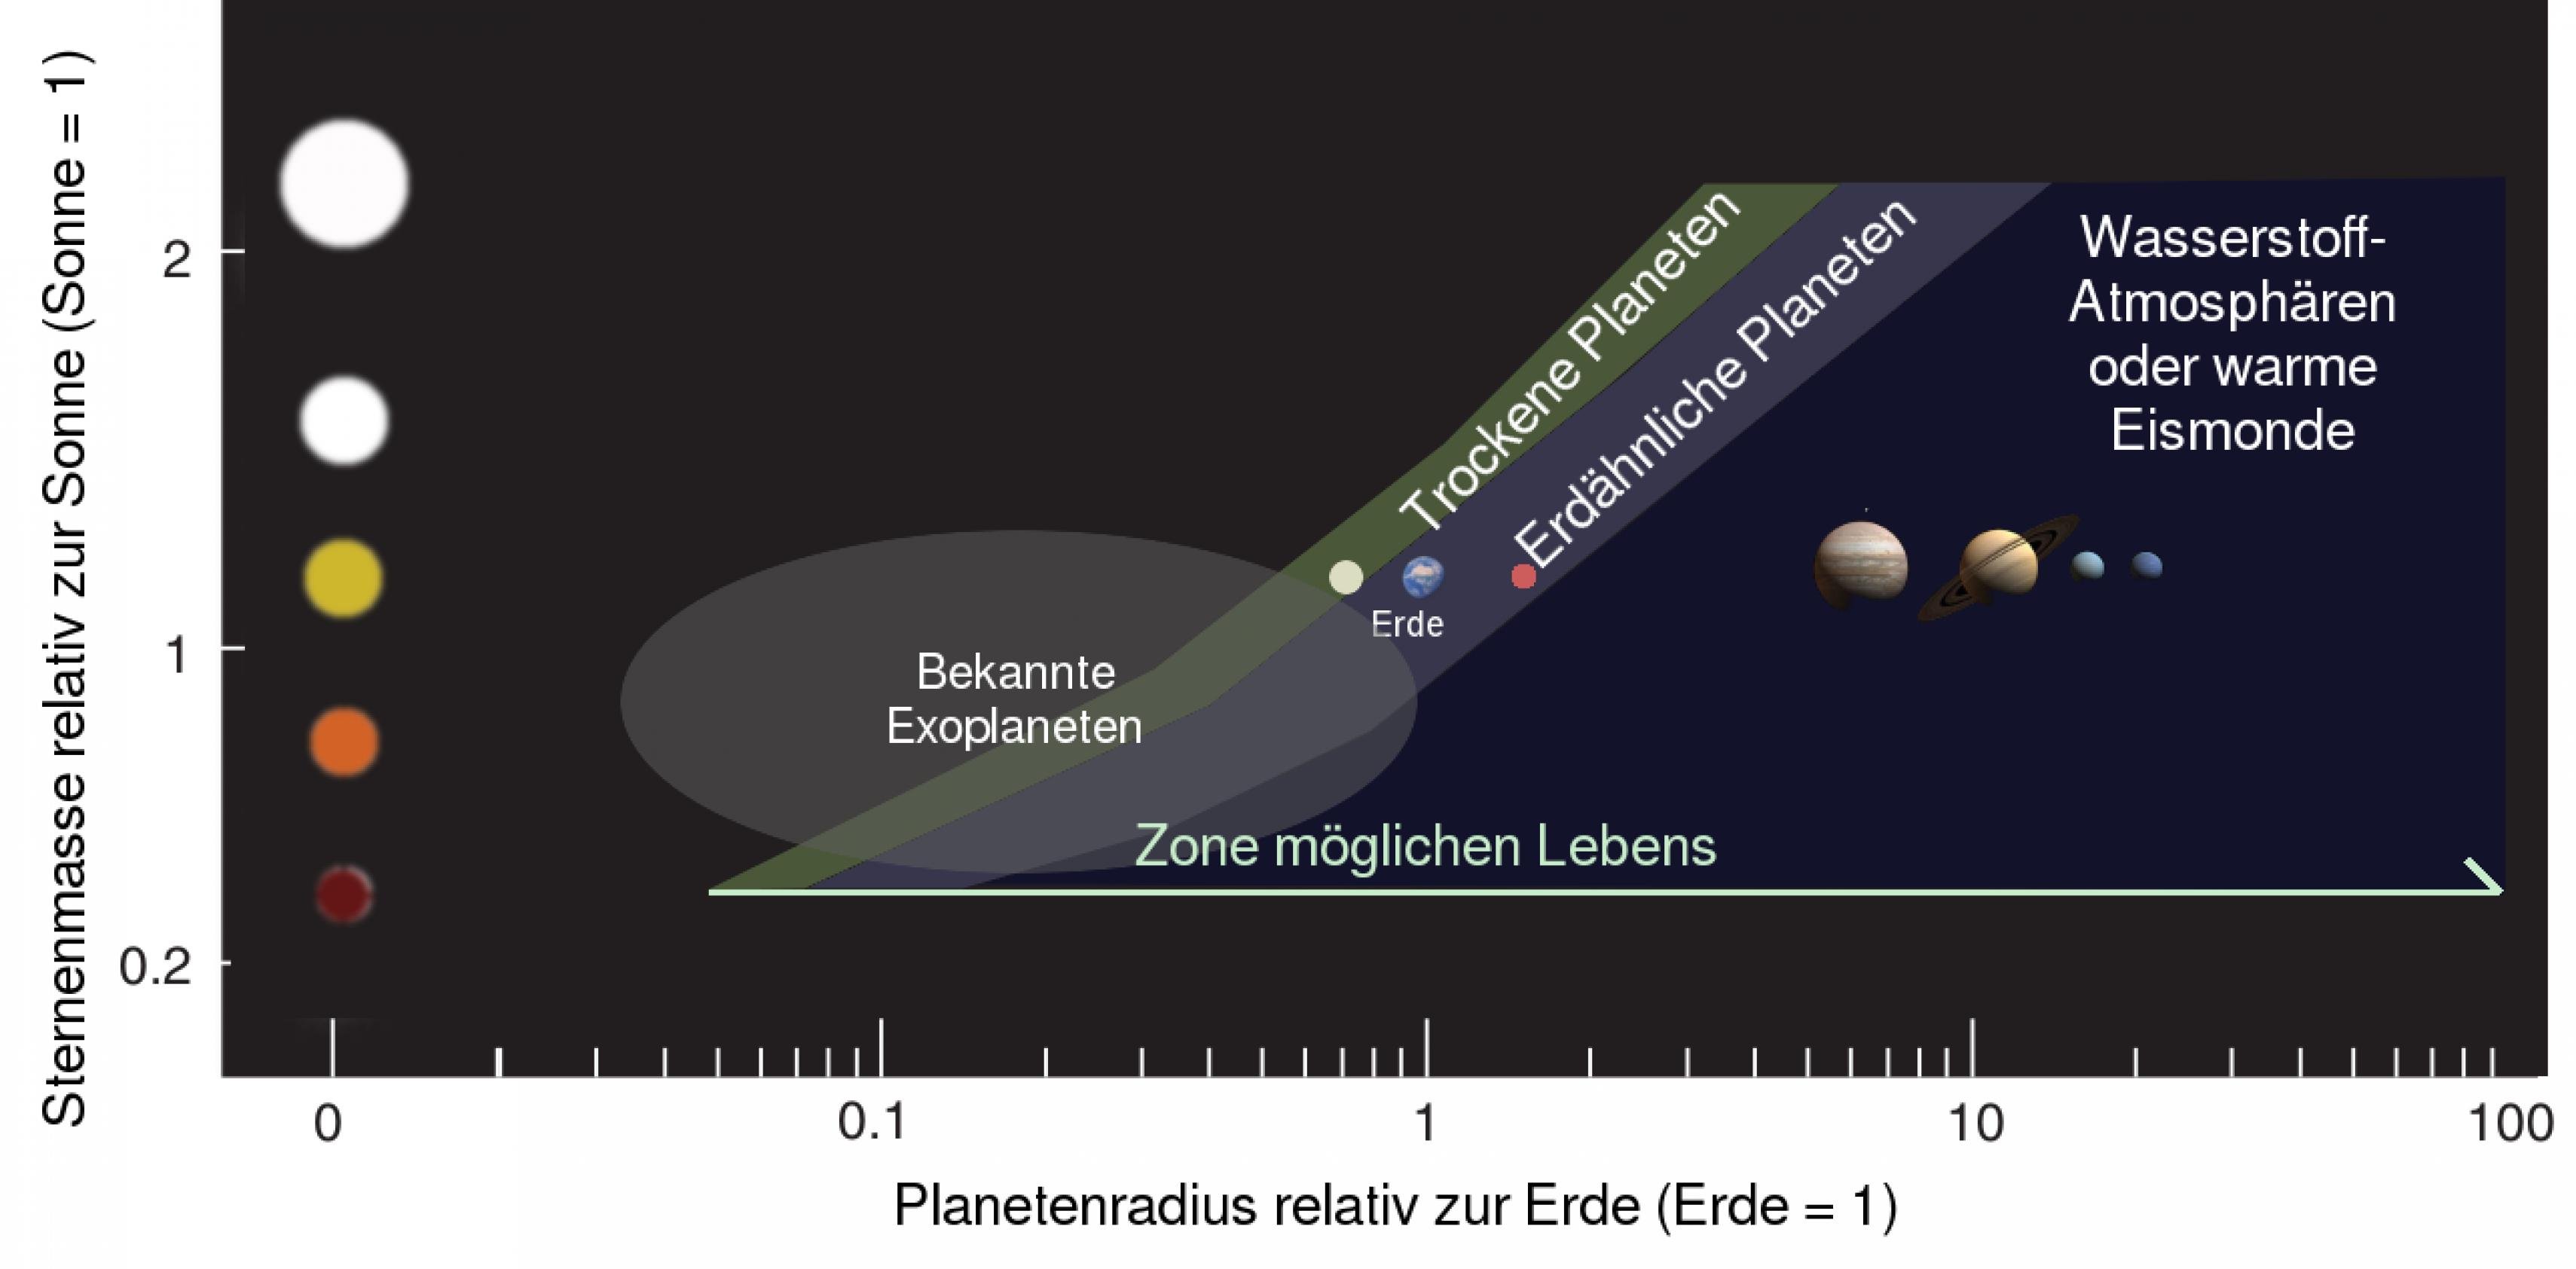 Grafik mit den habitablen Zonen um verschiedene Sterntypen: Neben der klassischen Zone um erdäwnhliche Planeten gehört eine schmale Region bis zur Venusbahn dazu, selbst marsähnliche Planeten könnten Leben beherbergt haben. Jenseits der Marsbahn könnte sich Leben entwickelt haben, wenn solche Planeten (oder Monde) eine interne Hitzequelle besitzen.